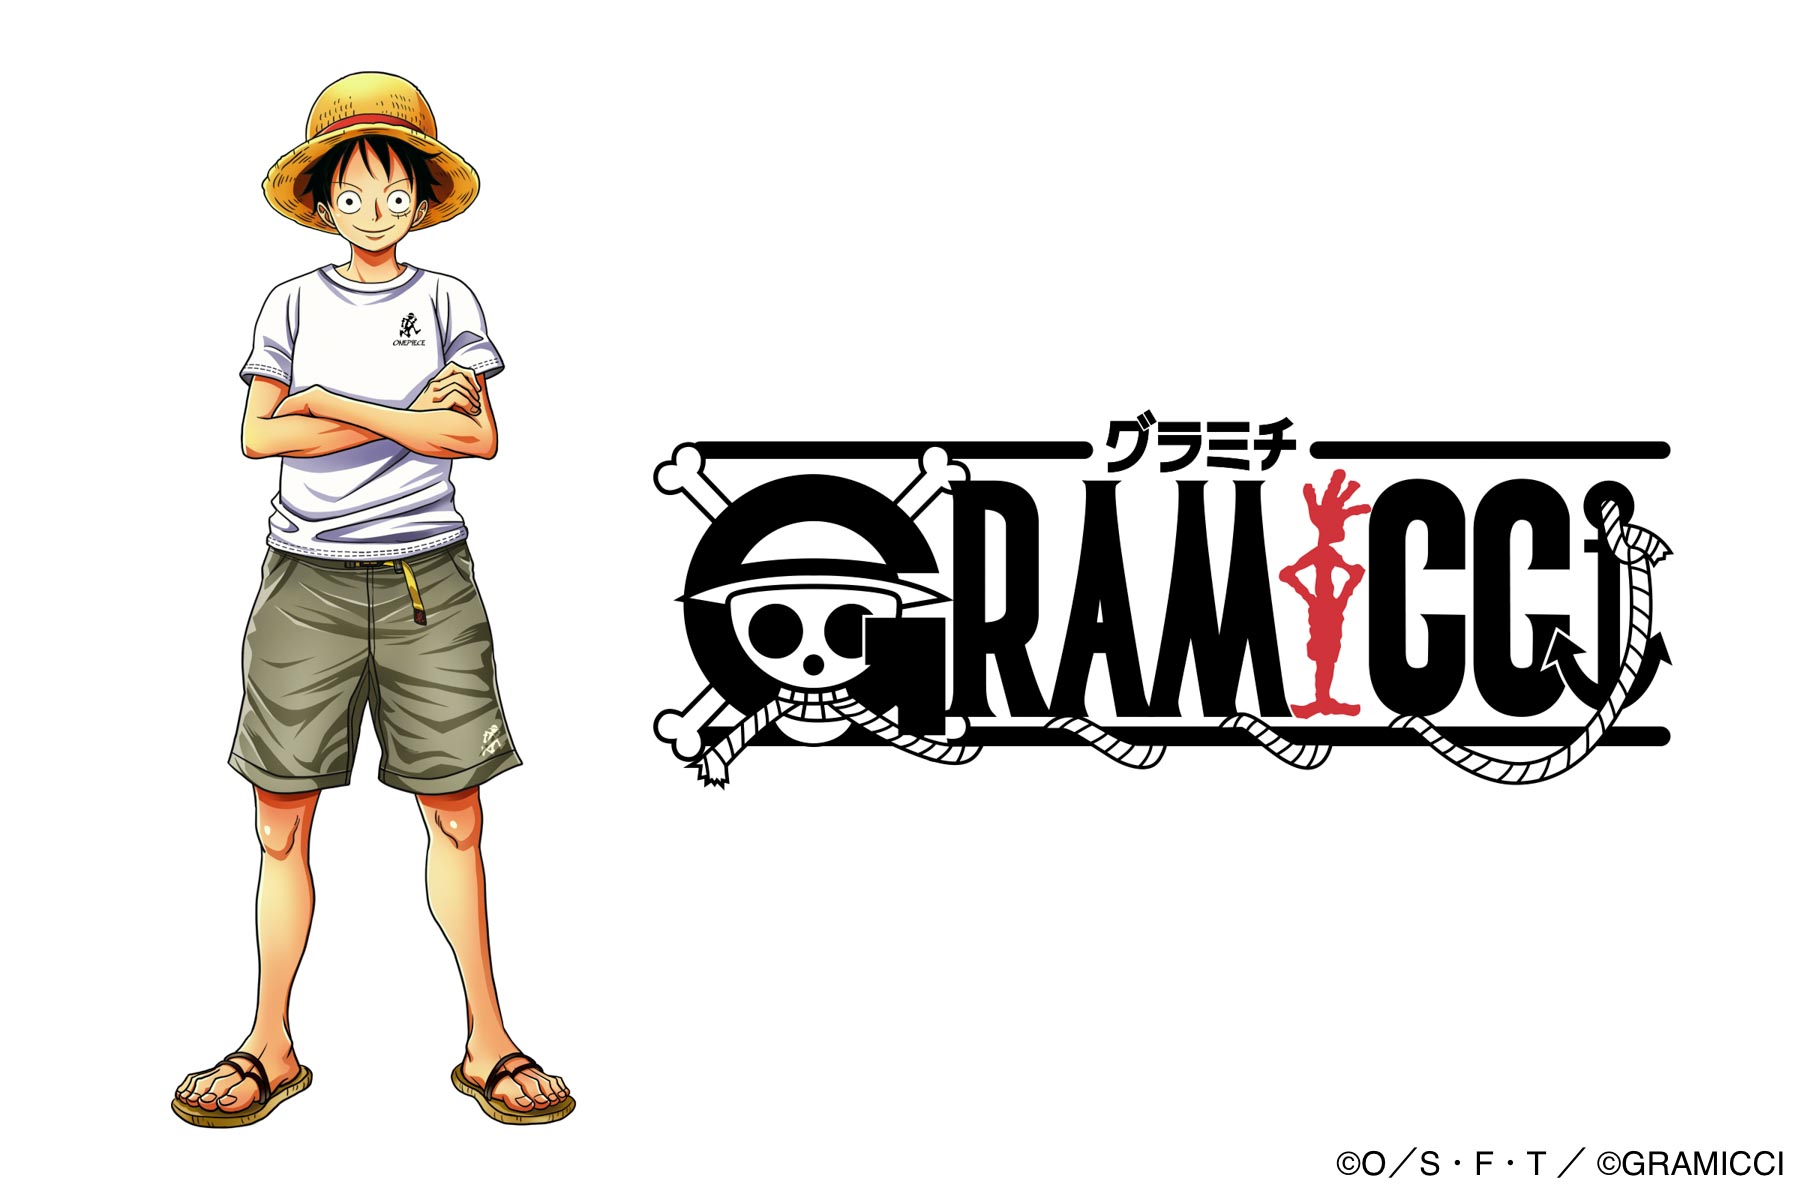 Gramicci One Piece ヒキダシトイ製コラボレーションフィギュア 限定カラー2モデルの登場です 株式会社ヒキダシ